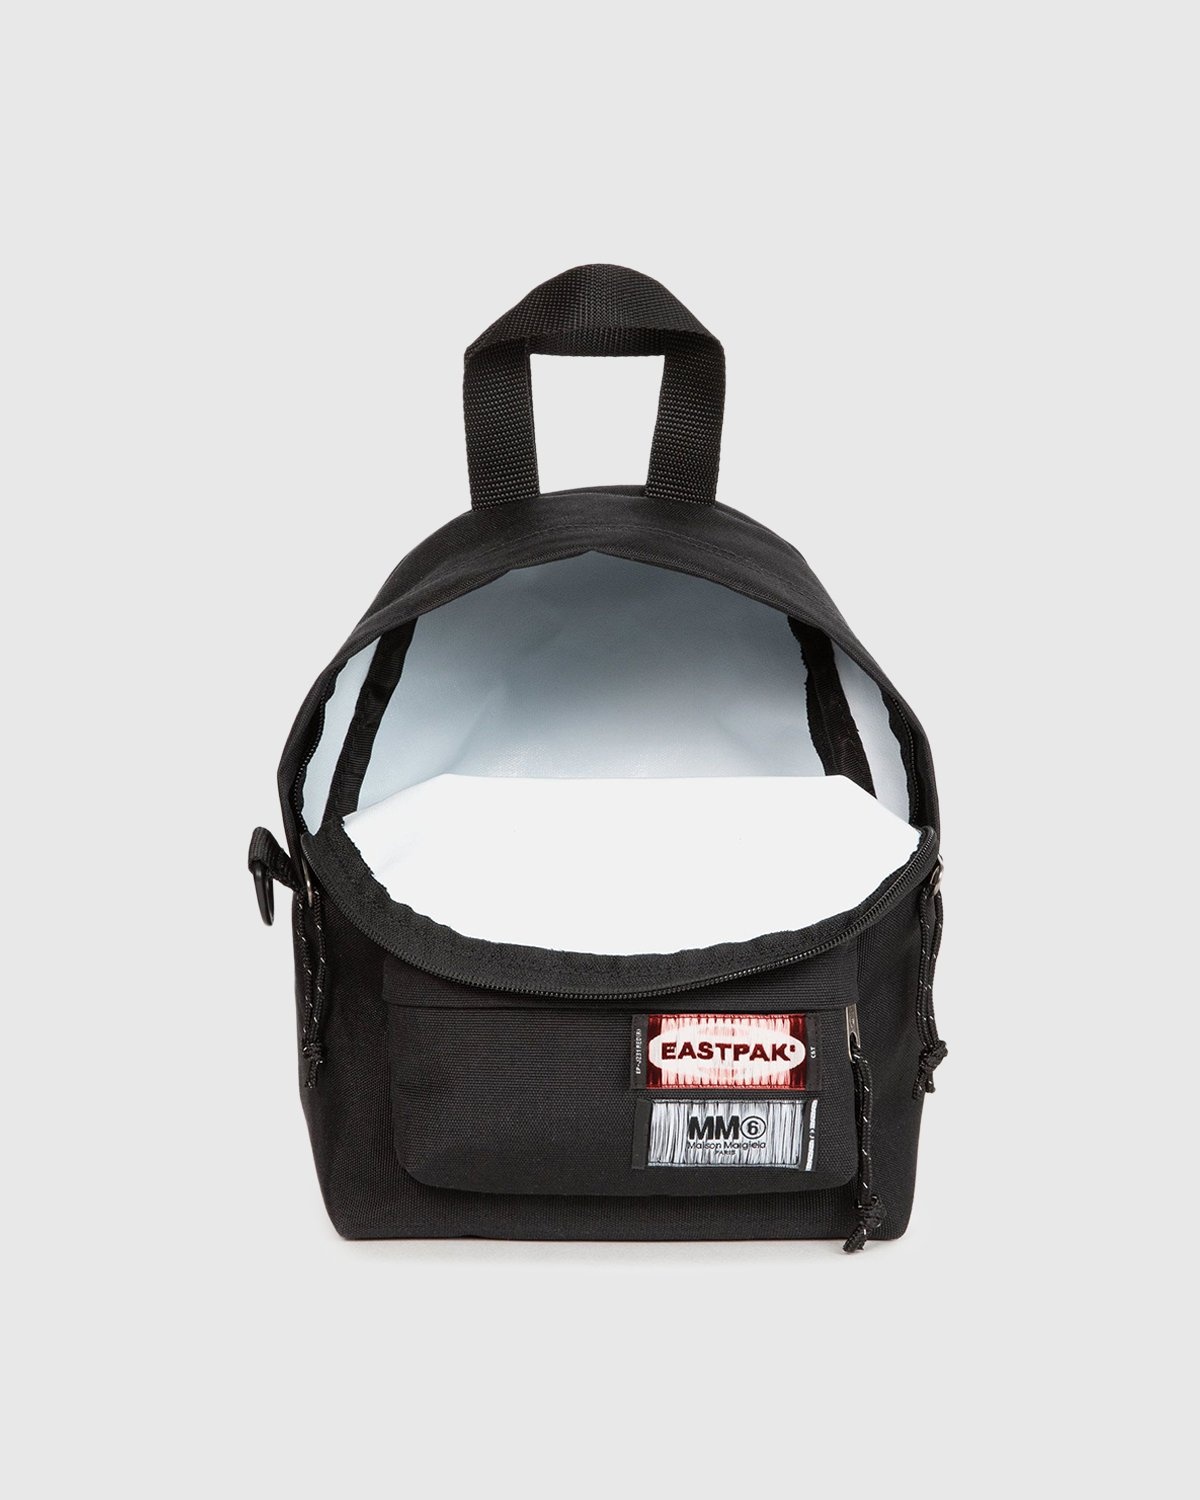 MM6 Maison Margiela x Eastpak – Shoulder Bag Black - Shoulder Bags - Black - Image 2